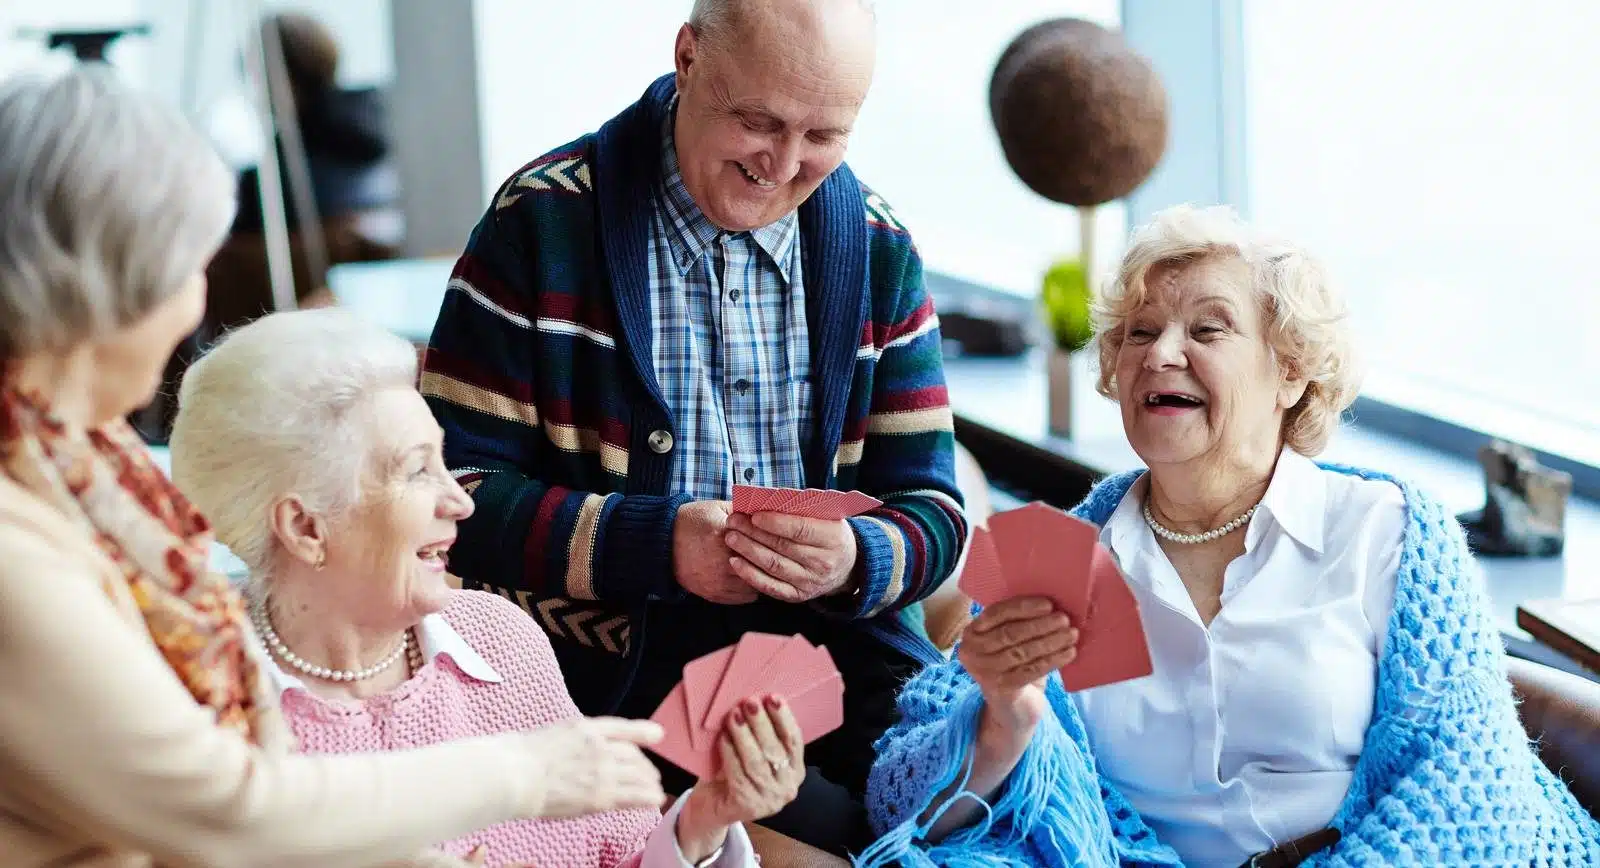 Comment les seniors peuvent rester actifs grâce aux loisirs